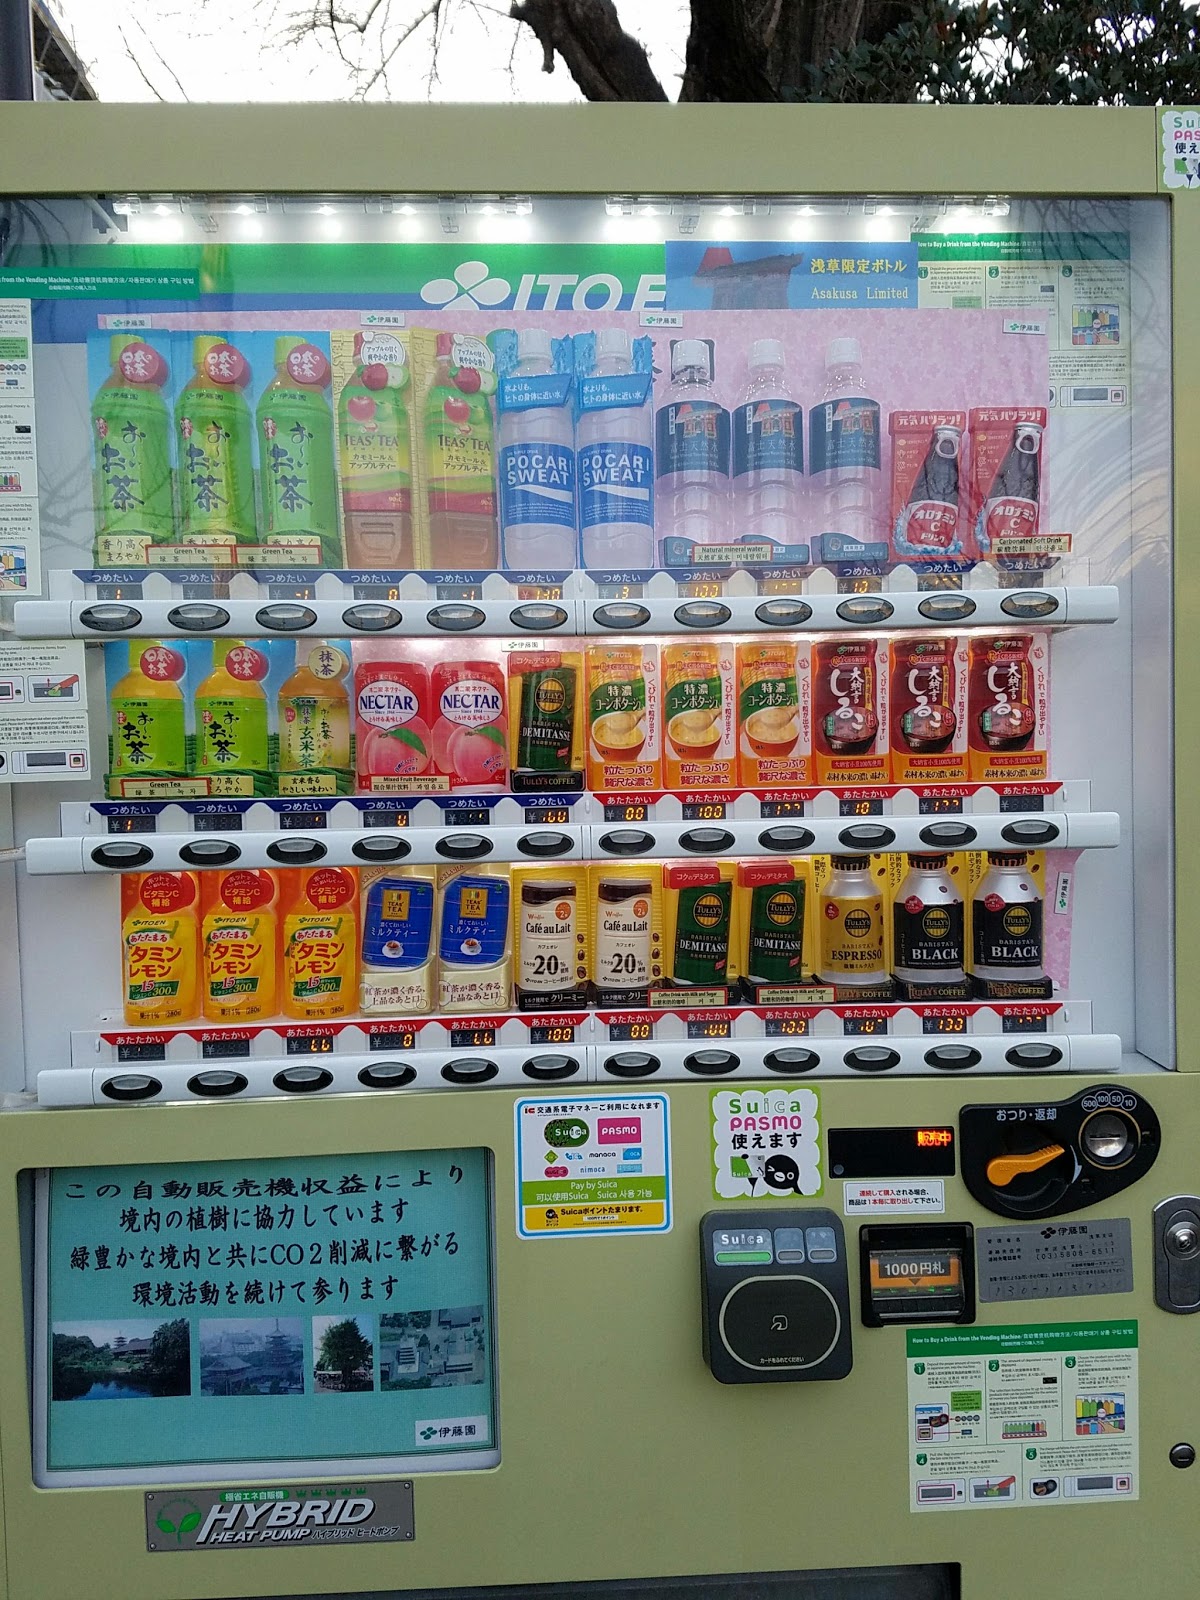 Tokyo Travel Guide Shinjuku vending machine